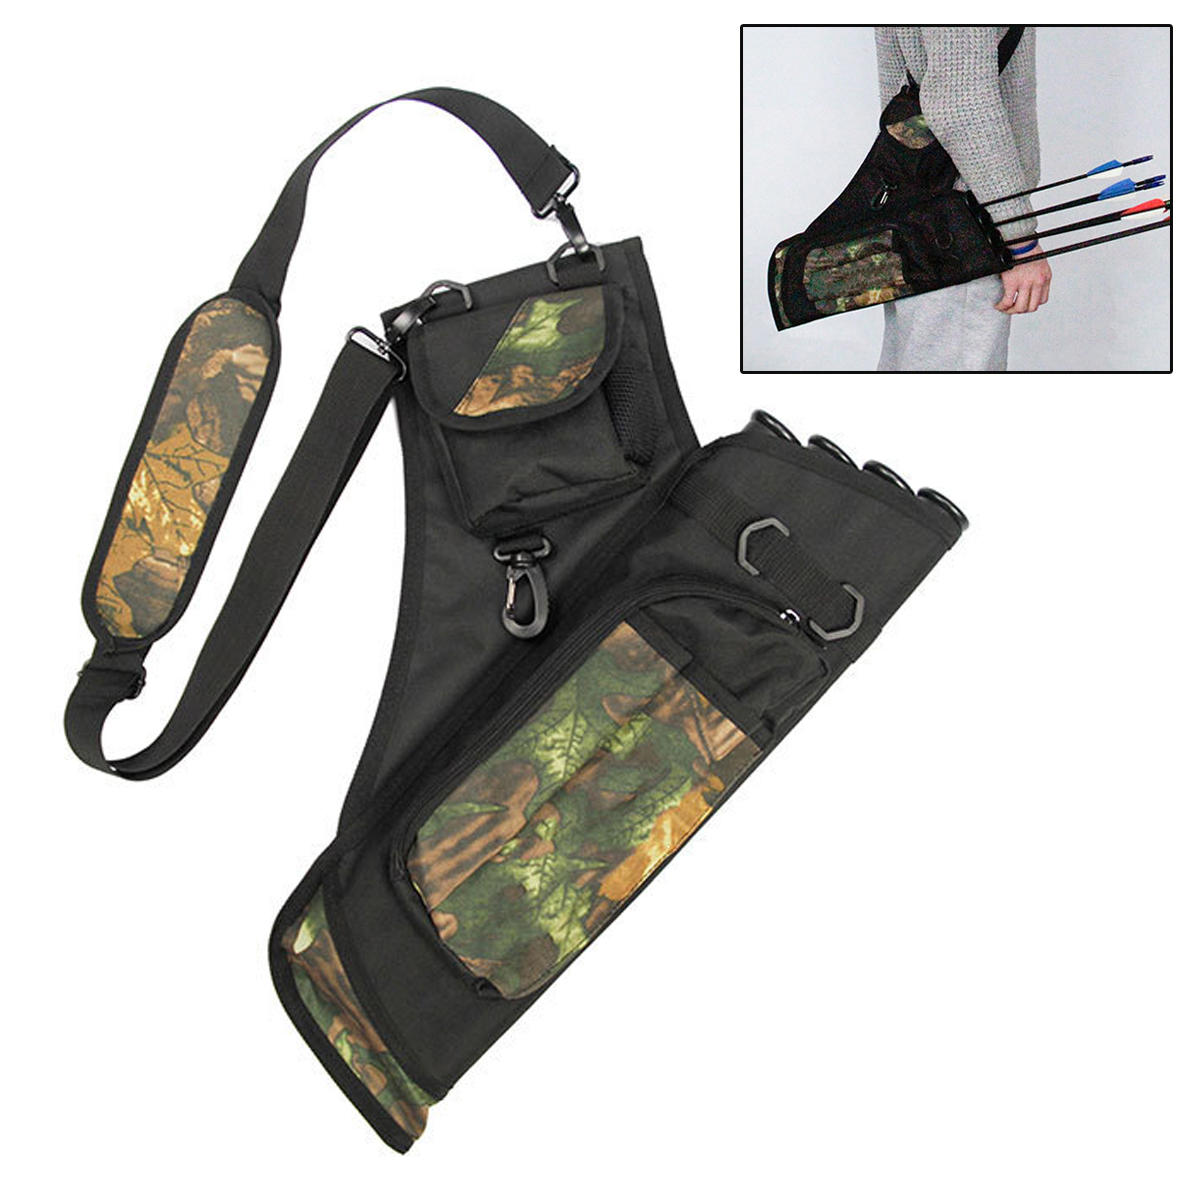 4 Tube Arrow Holder Adjustable Oxford Archery Bow Quiver Tactical Shoulder Bag Crossbody Messenger Bag